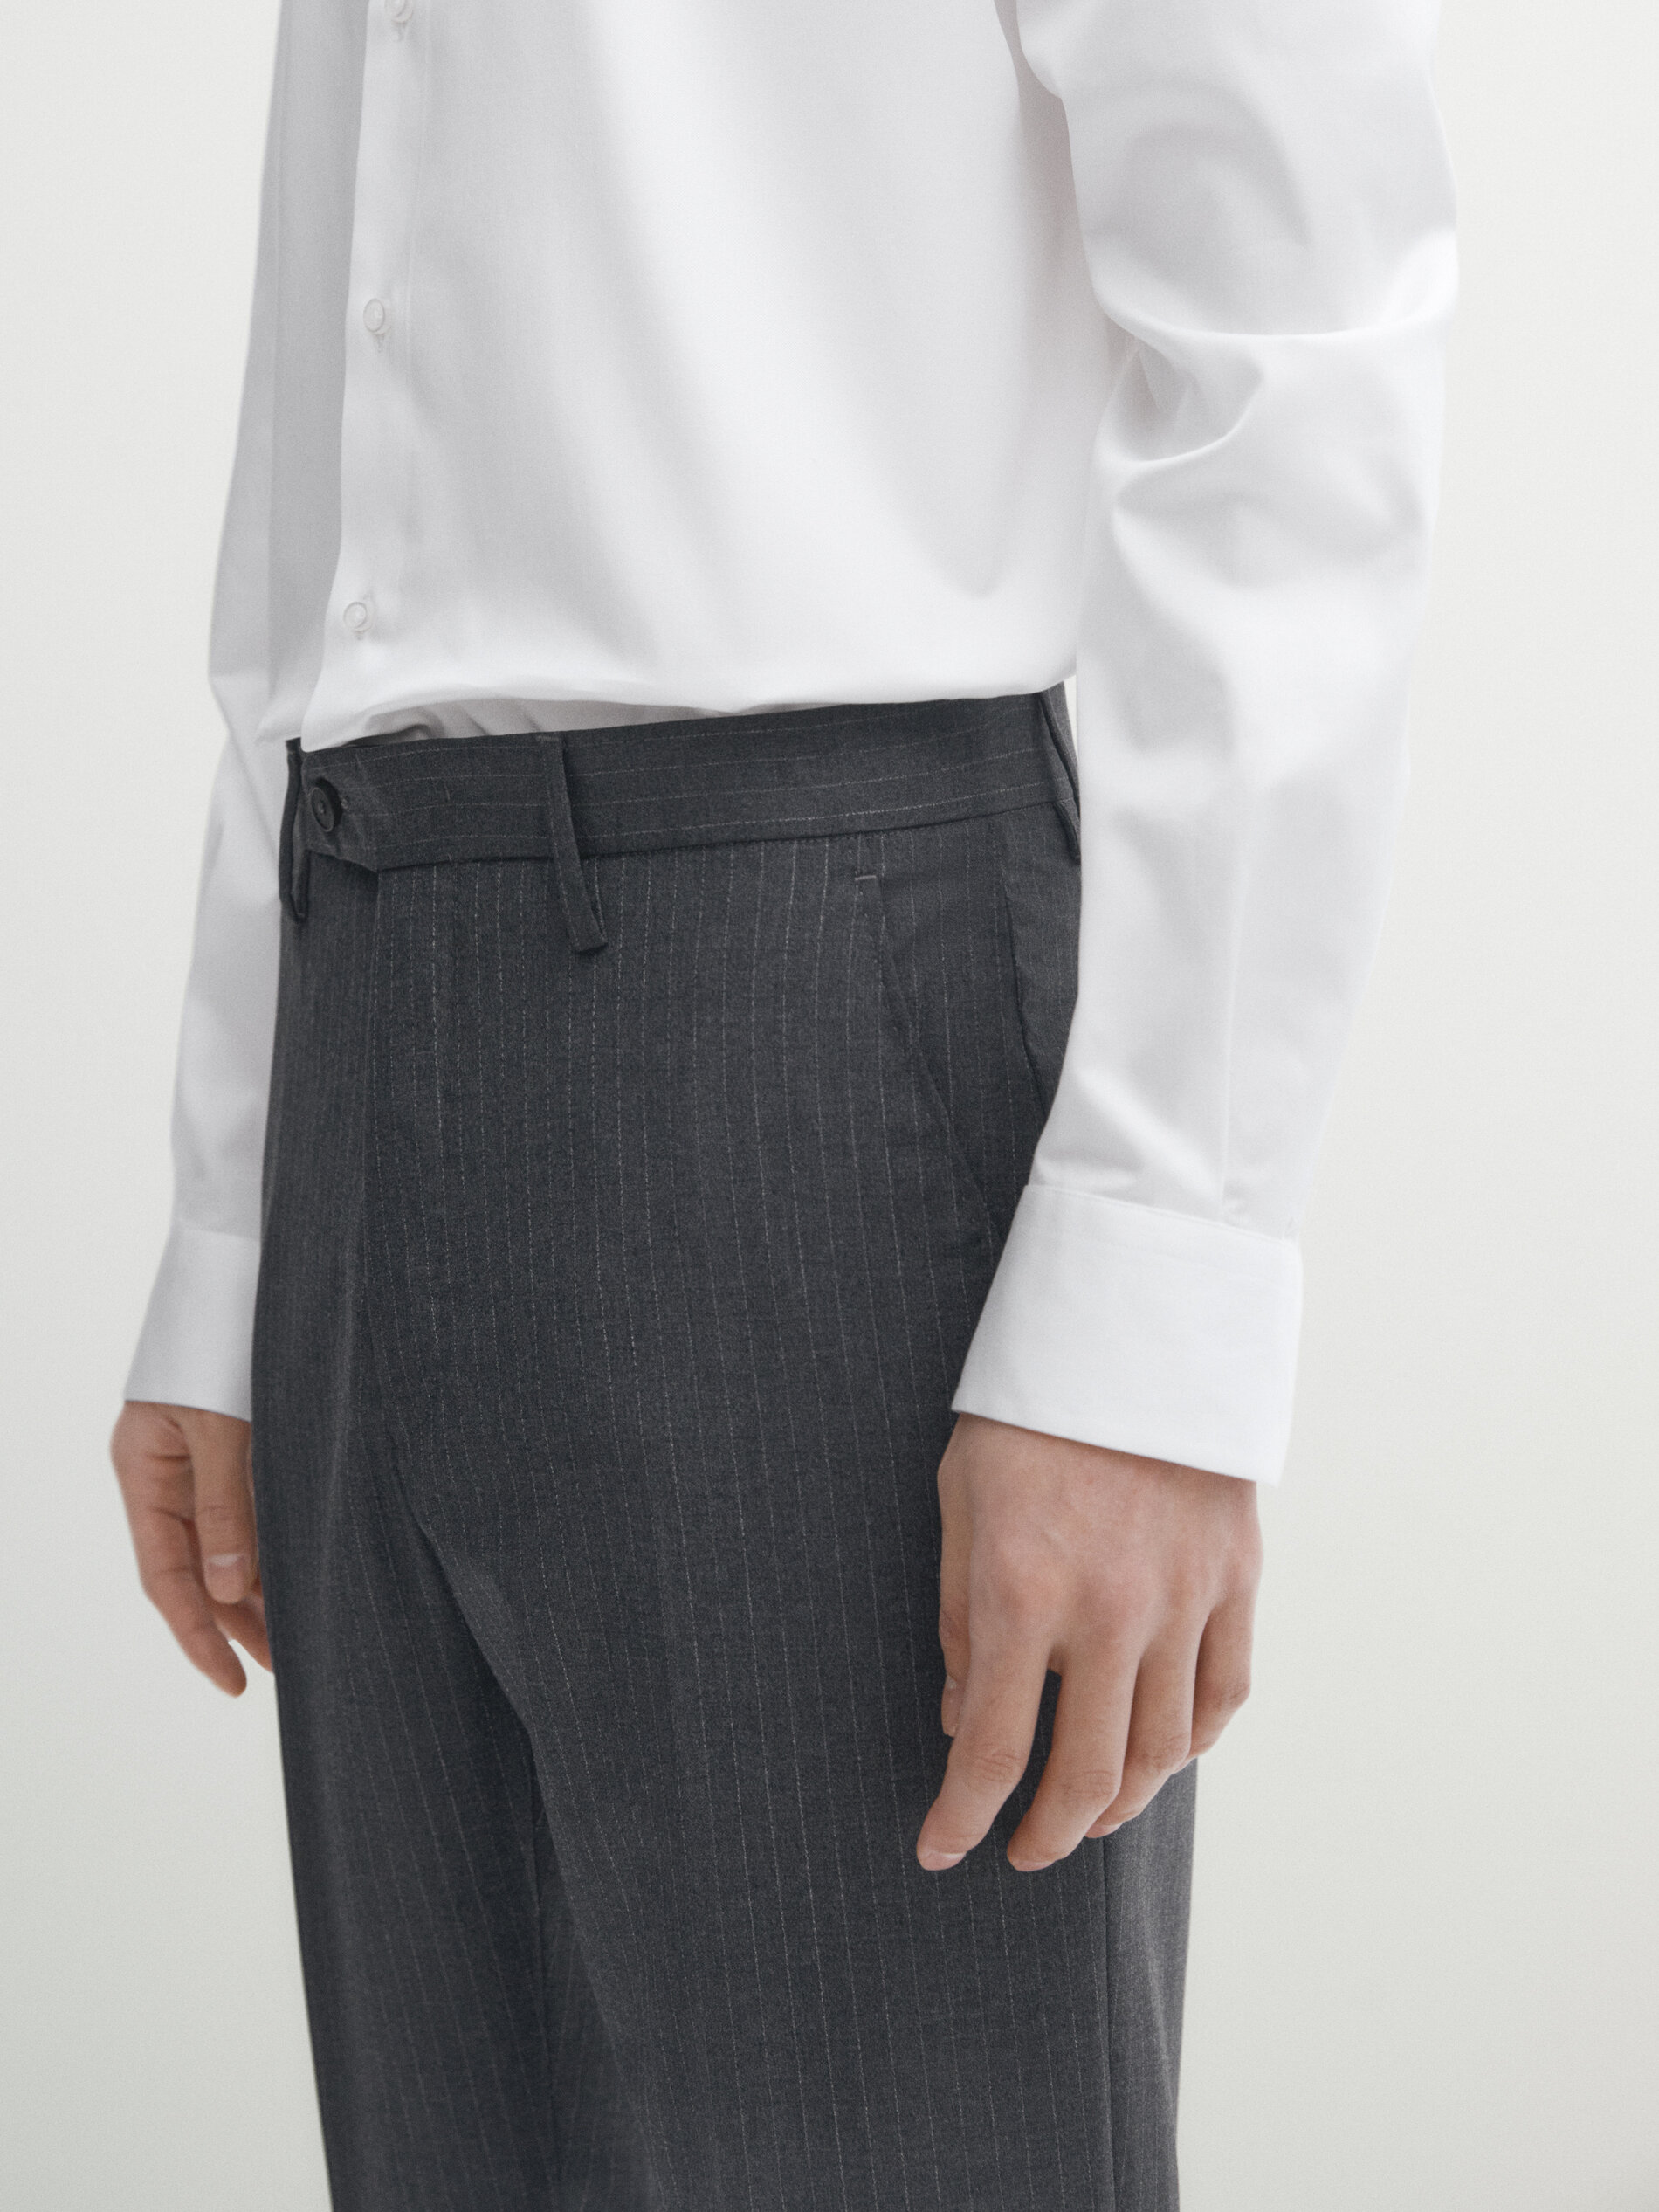 Pantalón traje gris rayas 100% lana